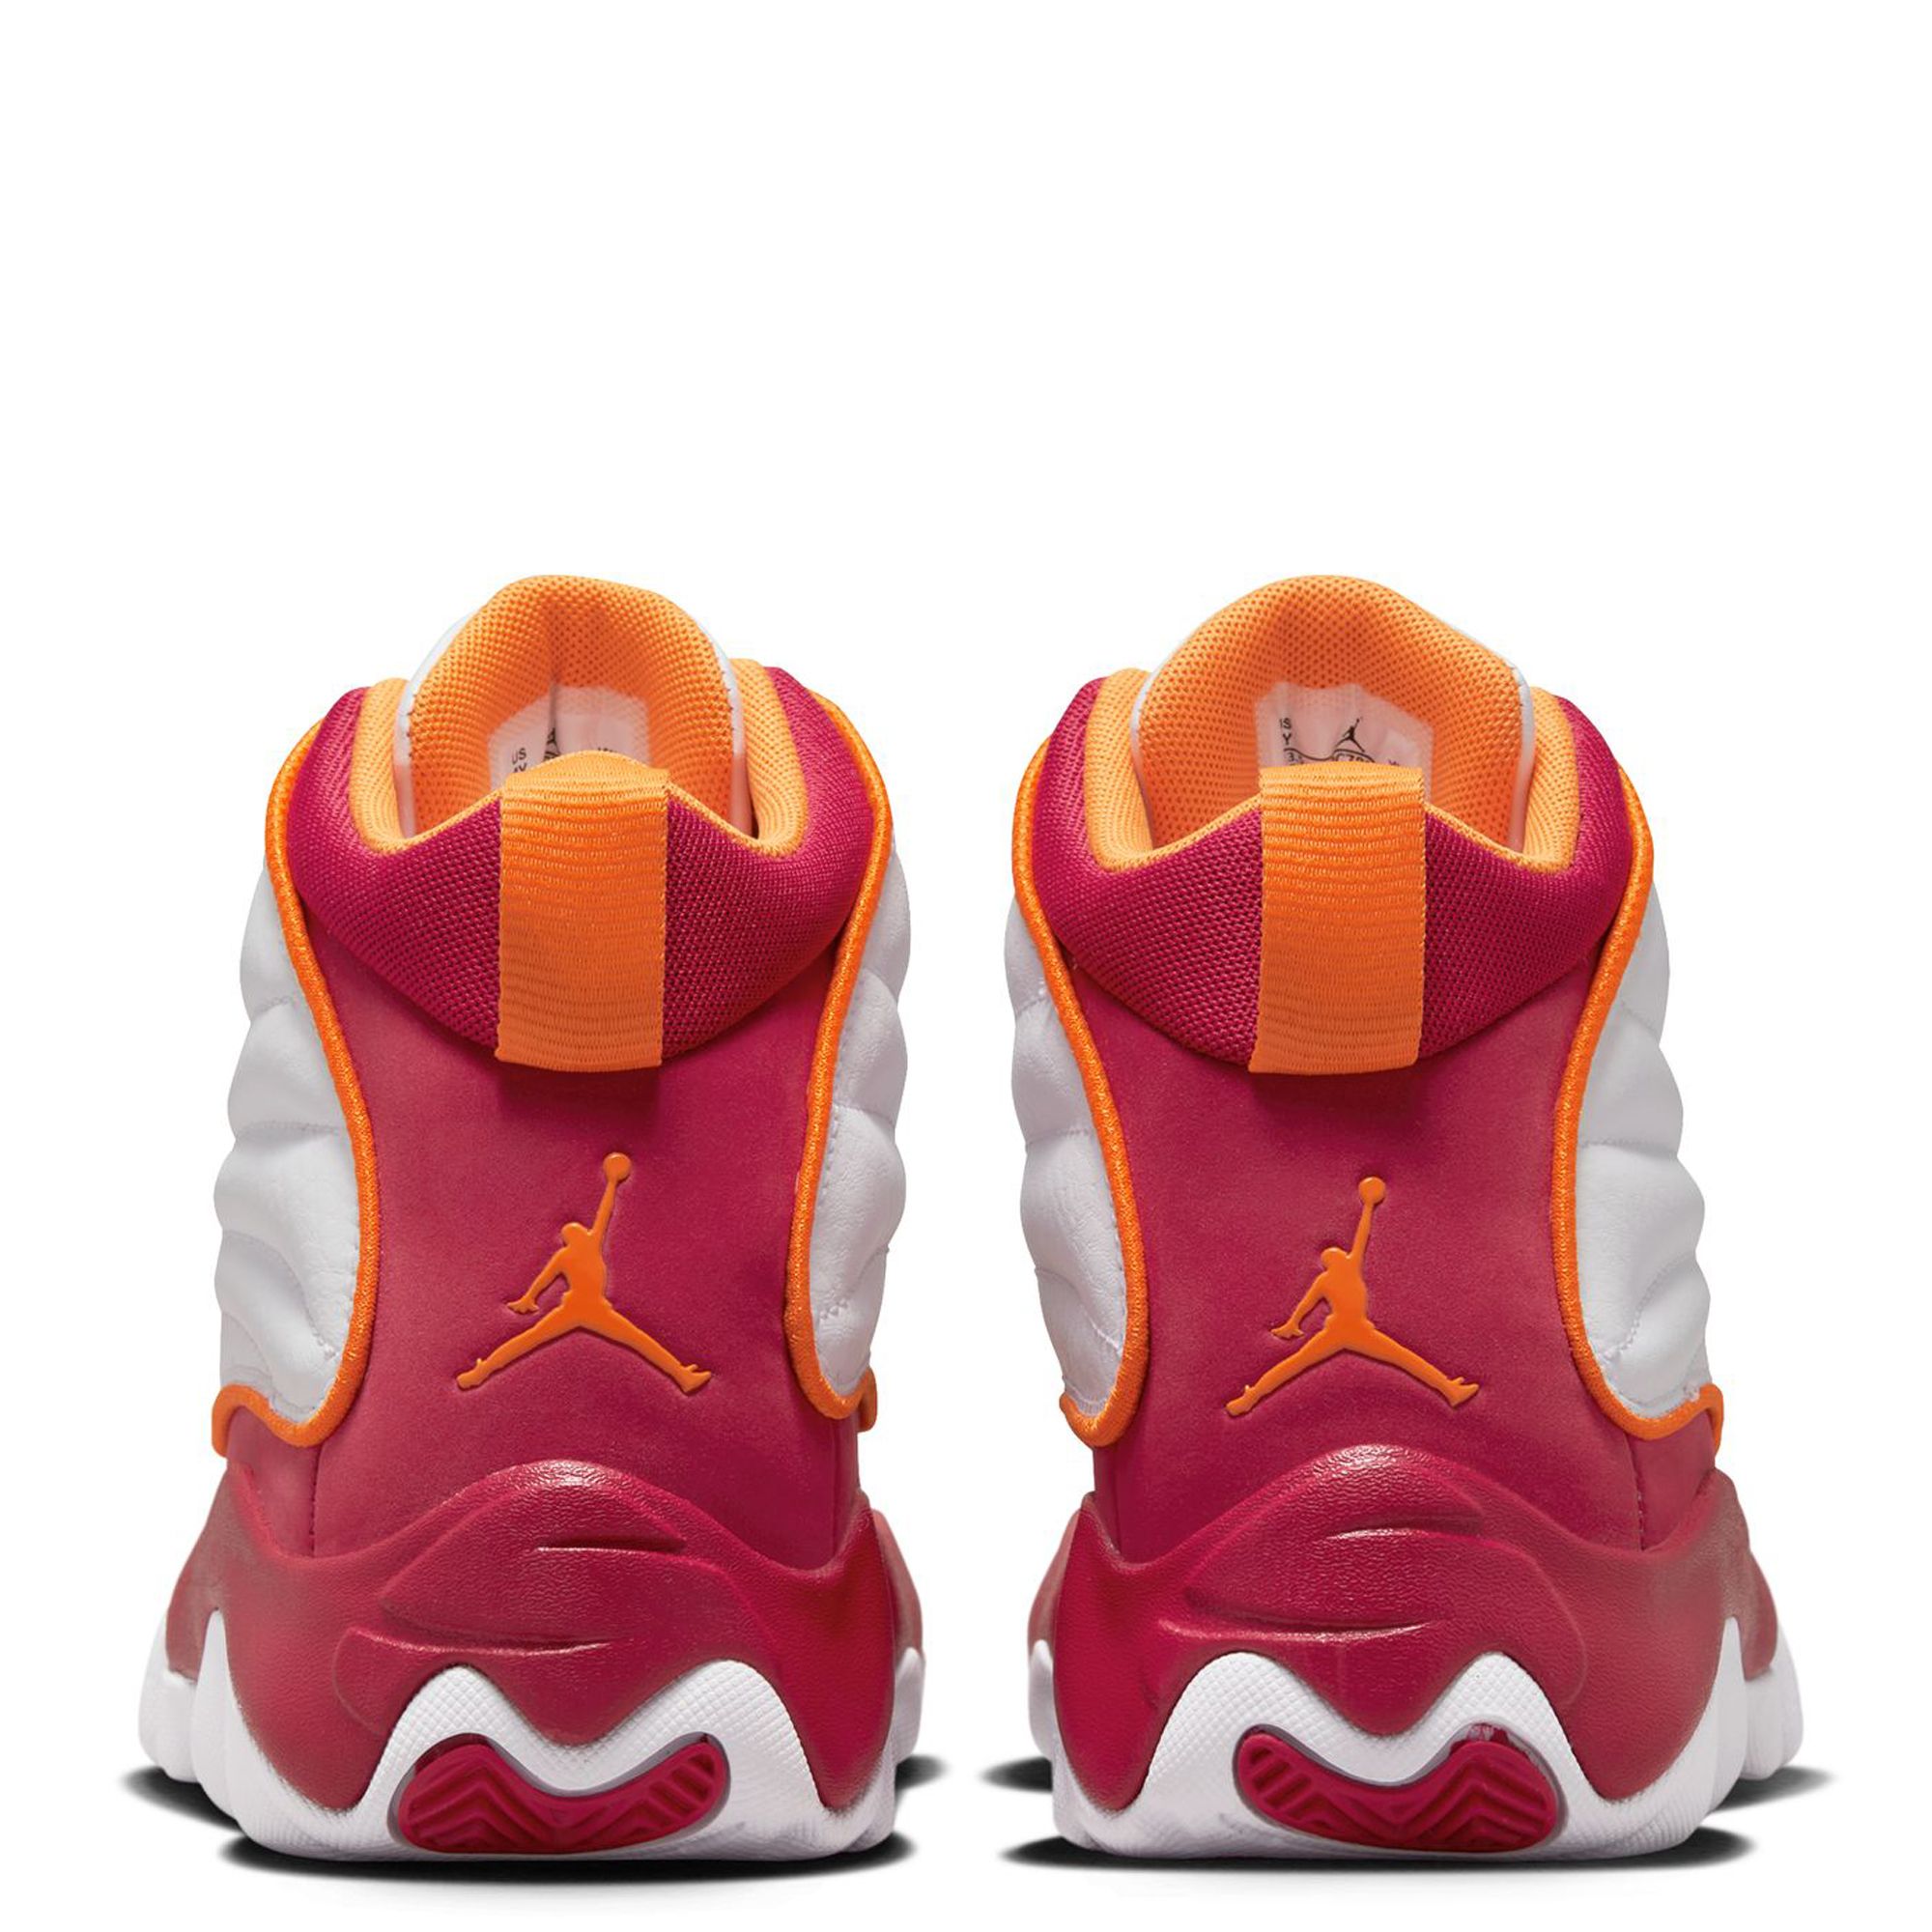 Jordan JORDAN UNISEX - Chaussures de basket - white/cardinal red/vivid  orange/black/blanc 